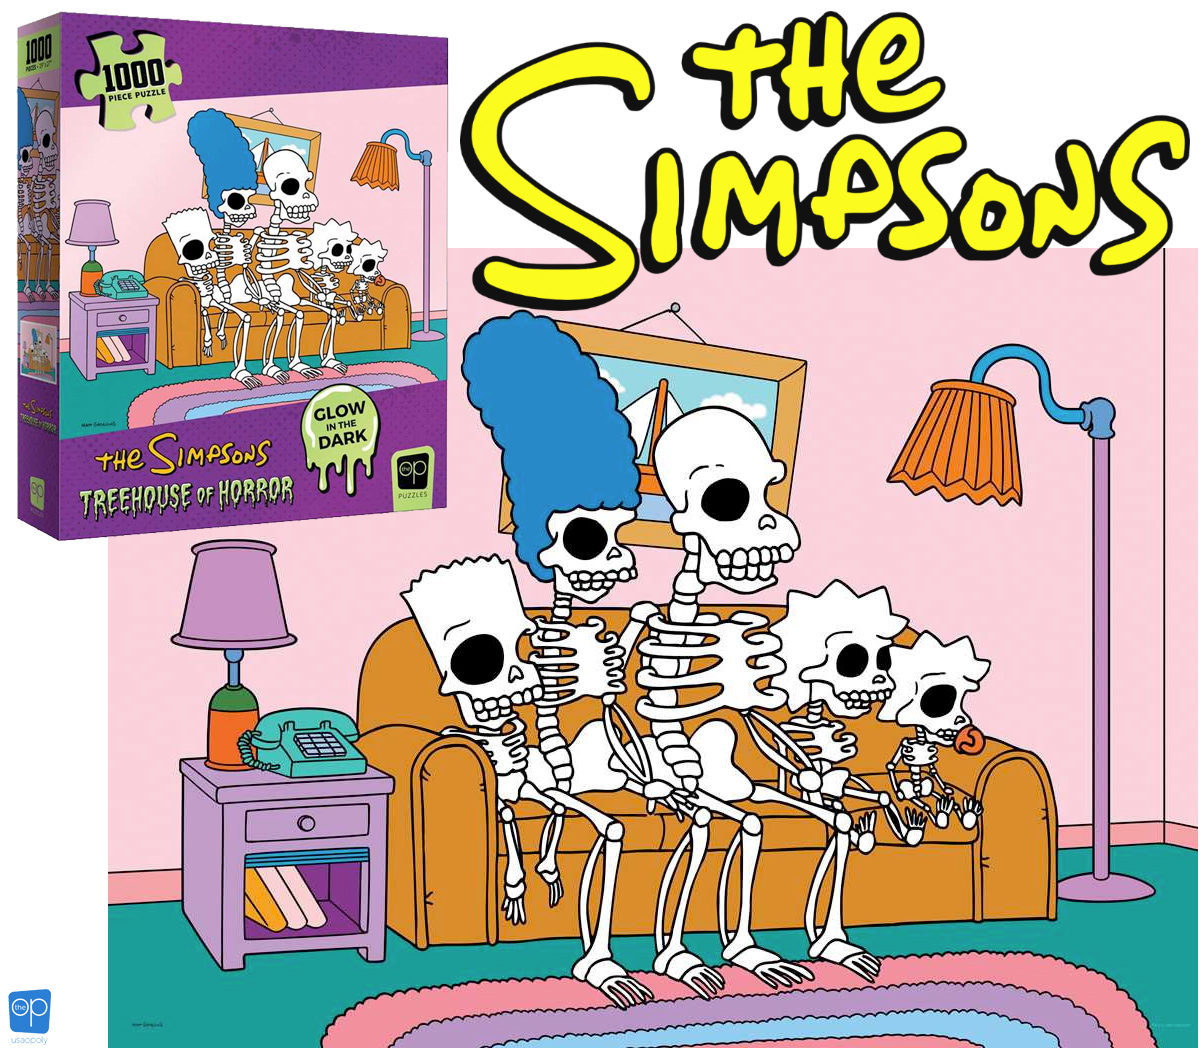 Quebra Cabeça Os Simpsons Treehouse of Horror “Esqueletos no Sofá” com 1.000 Peças